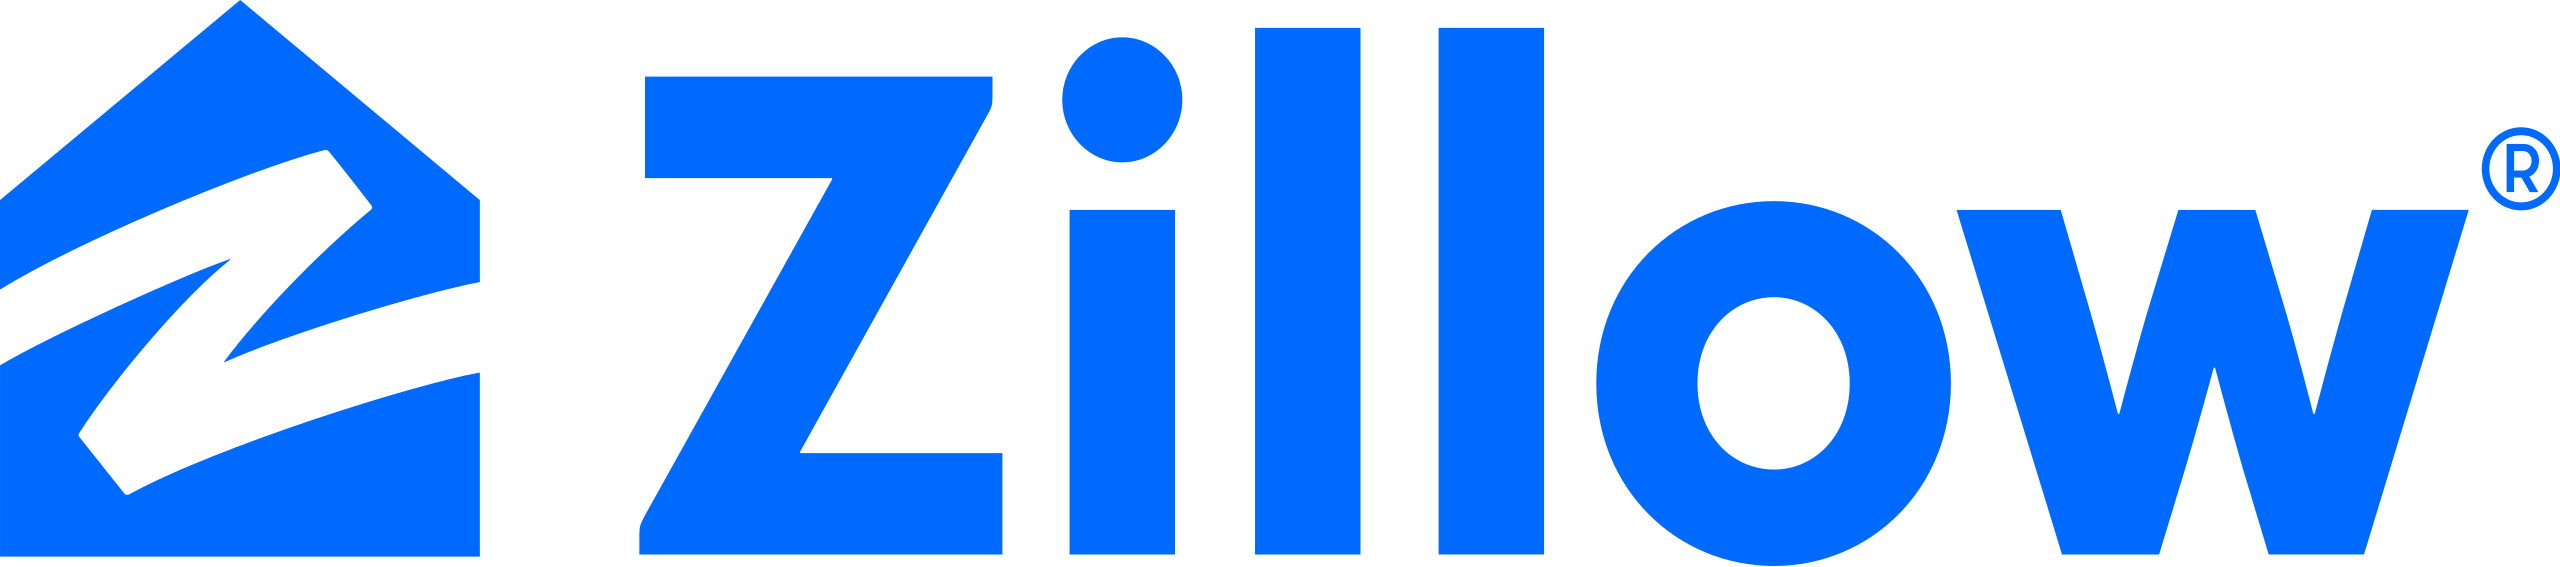 File:MMM logo.svg - Wikipedia